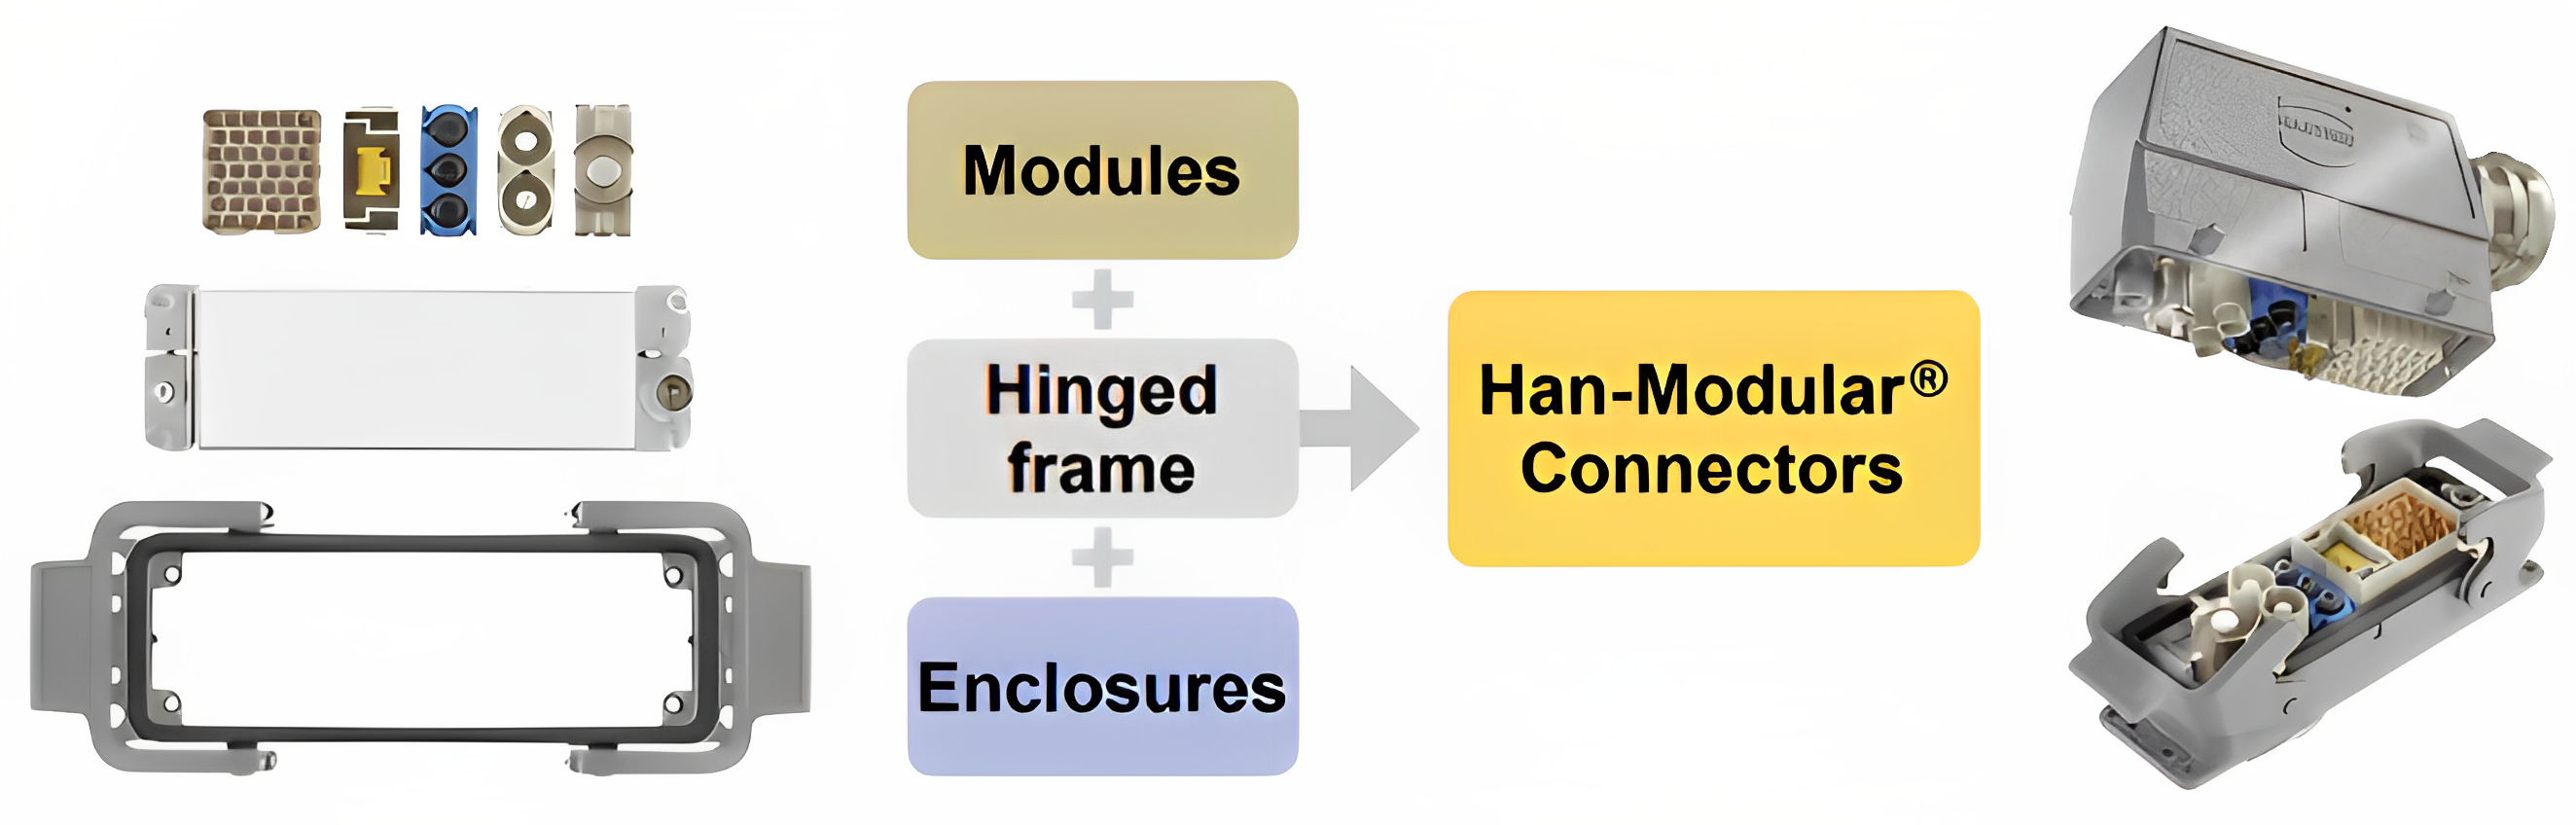 Modulare Steckverbinder für Wasserstoffanwendungen (Han-Modular®)_6